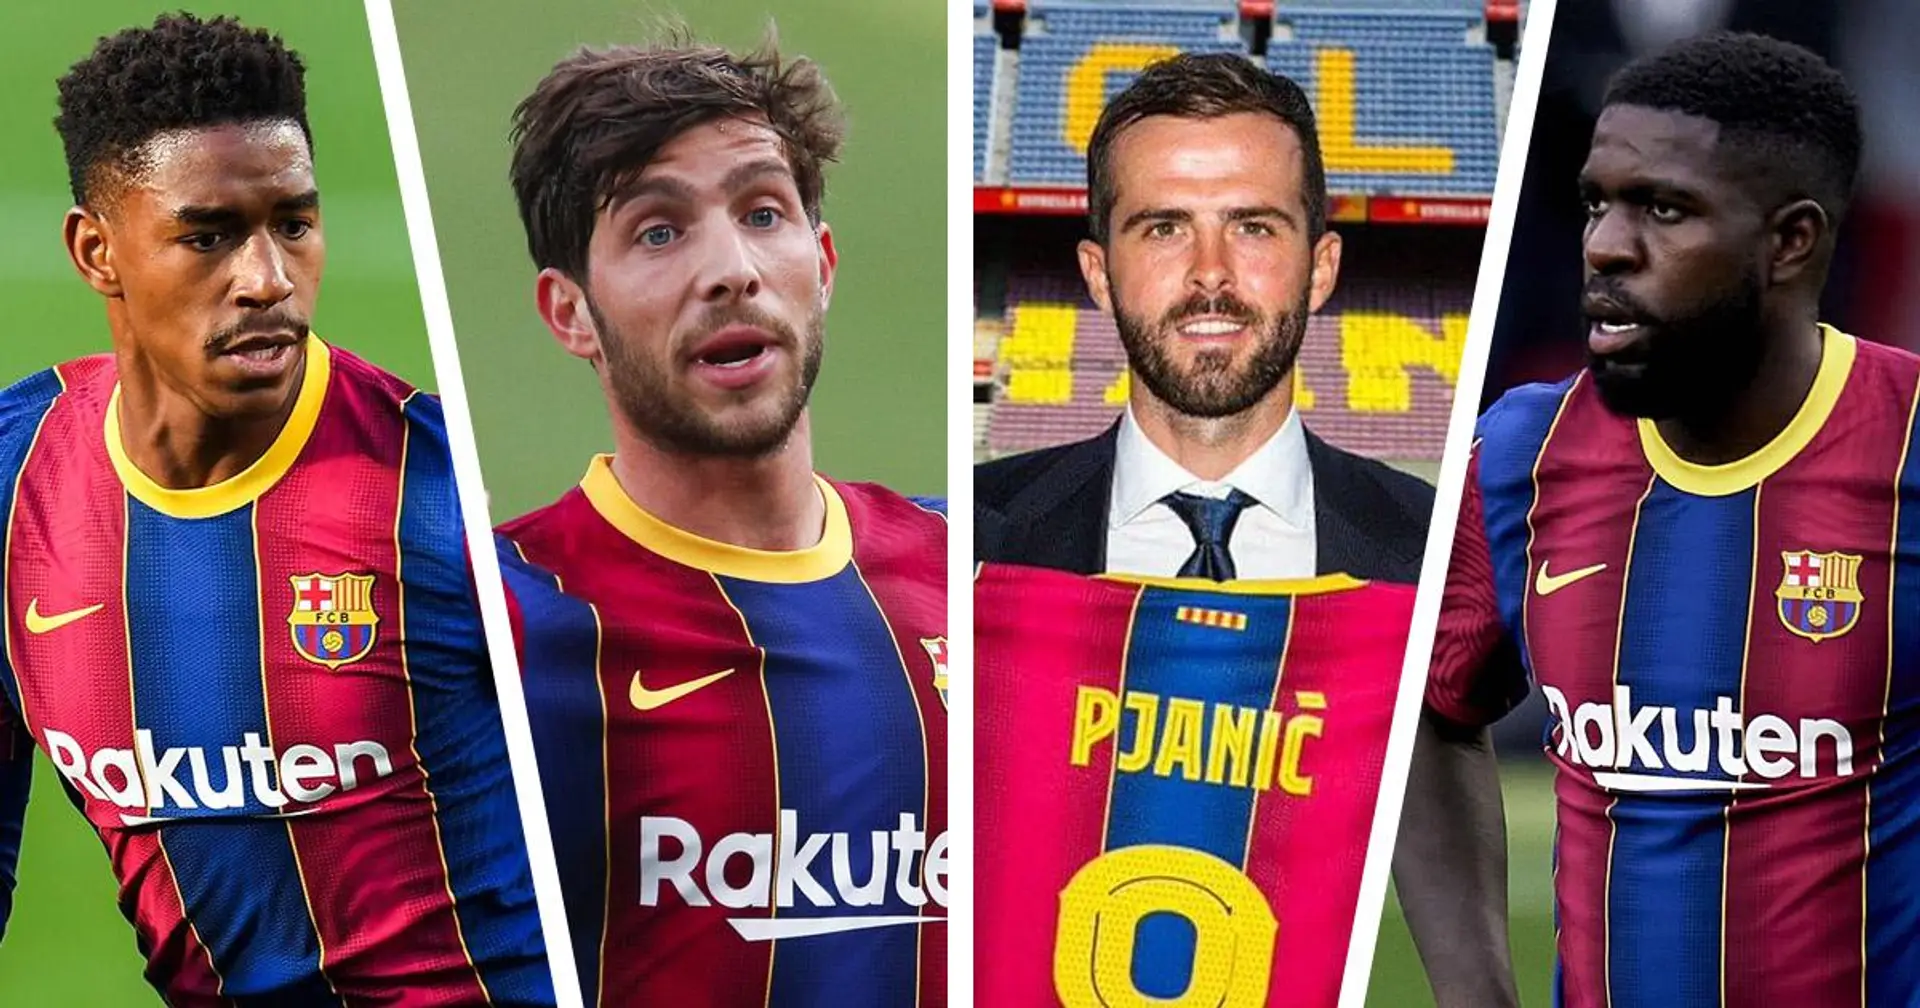 Révélé: combien d'argent le Barça pourrait-il économiser sur les salaires en vendant des joueurs peu productifs cet été